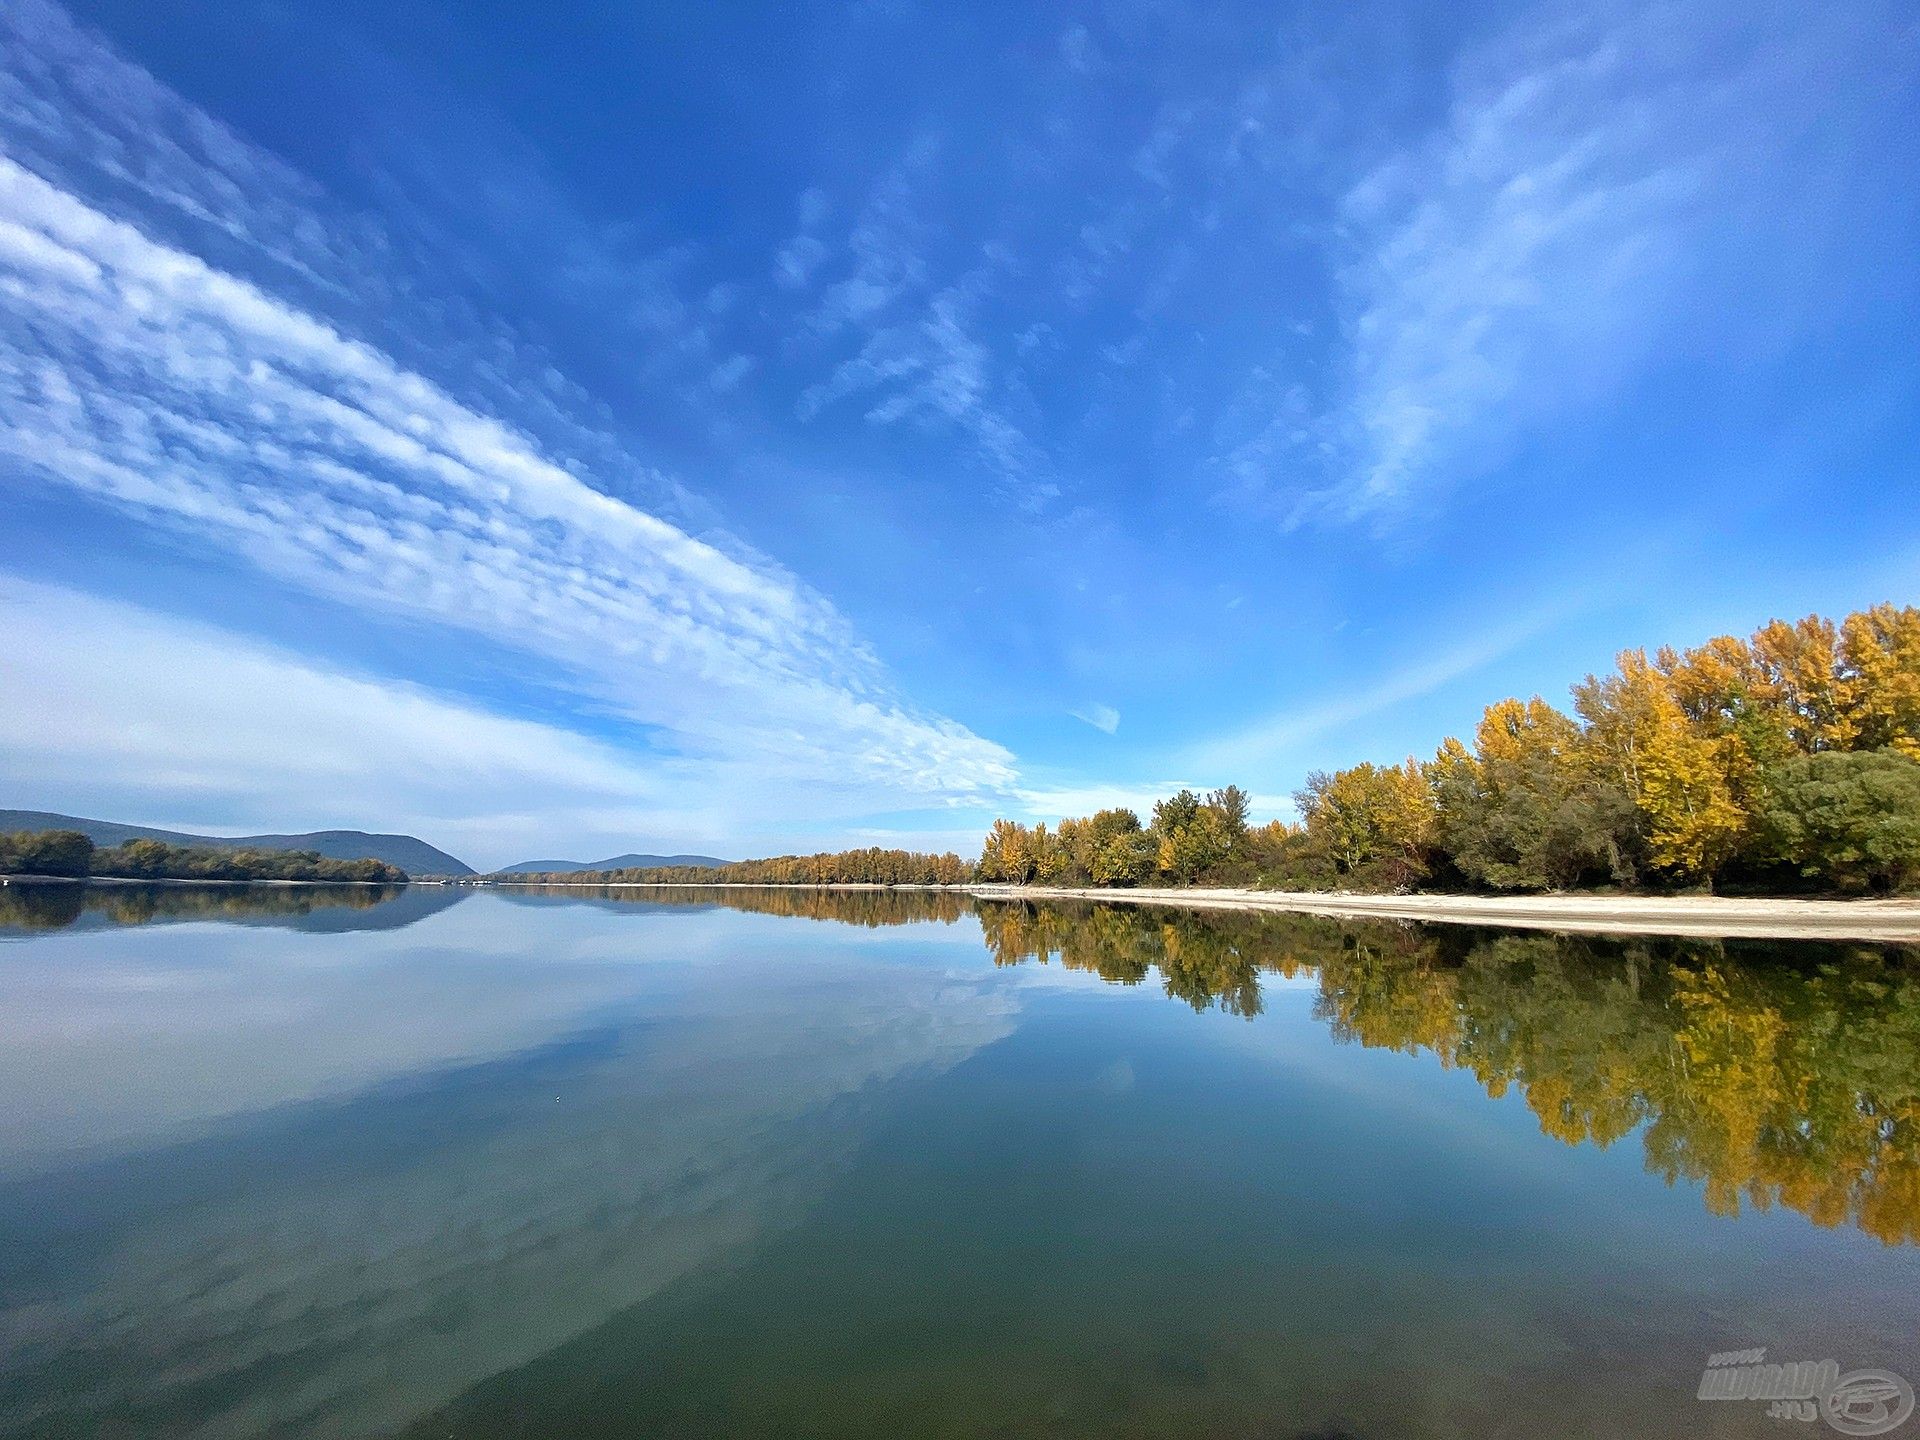 Az őszi Duna csodálatos élményeket adhat, akár csak a vízparton töltött idővel